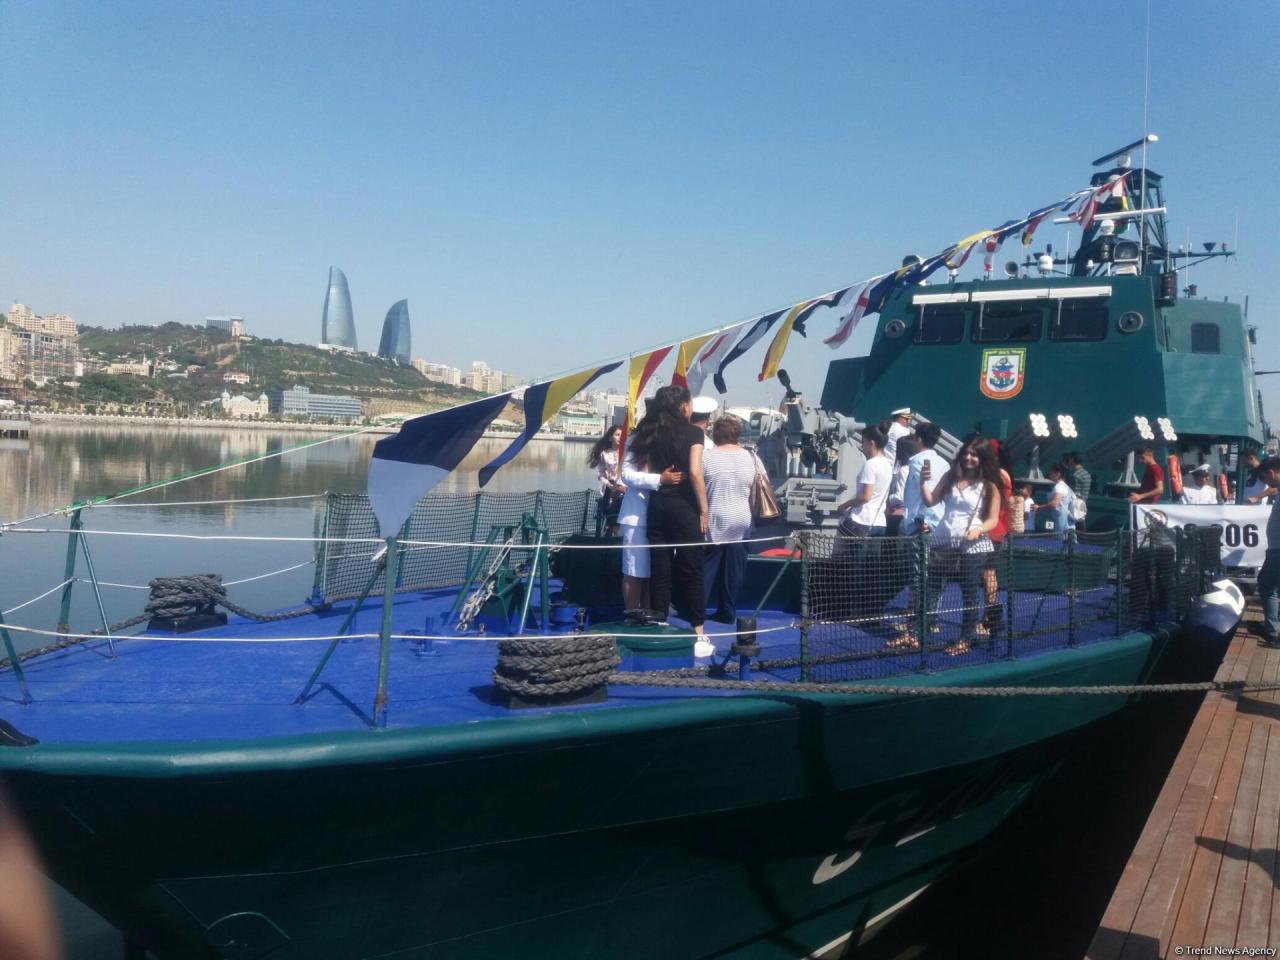 Azerbaijan’s "Tufan" ship showcased at military exhibition [PHOTO]